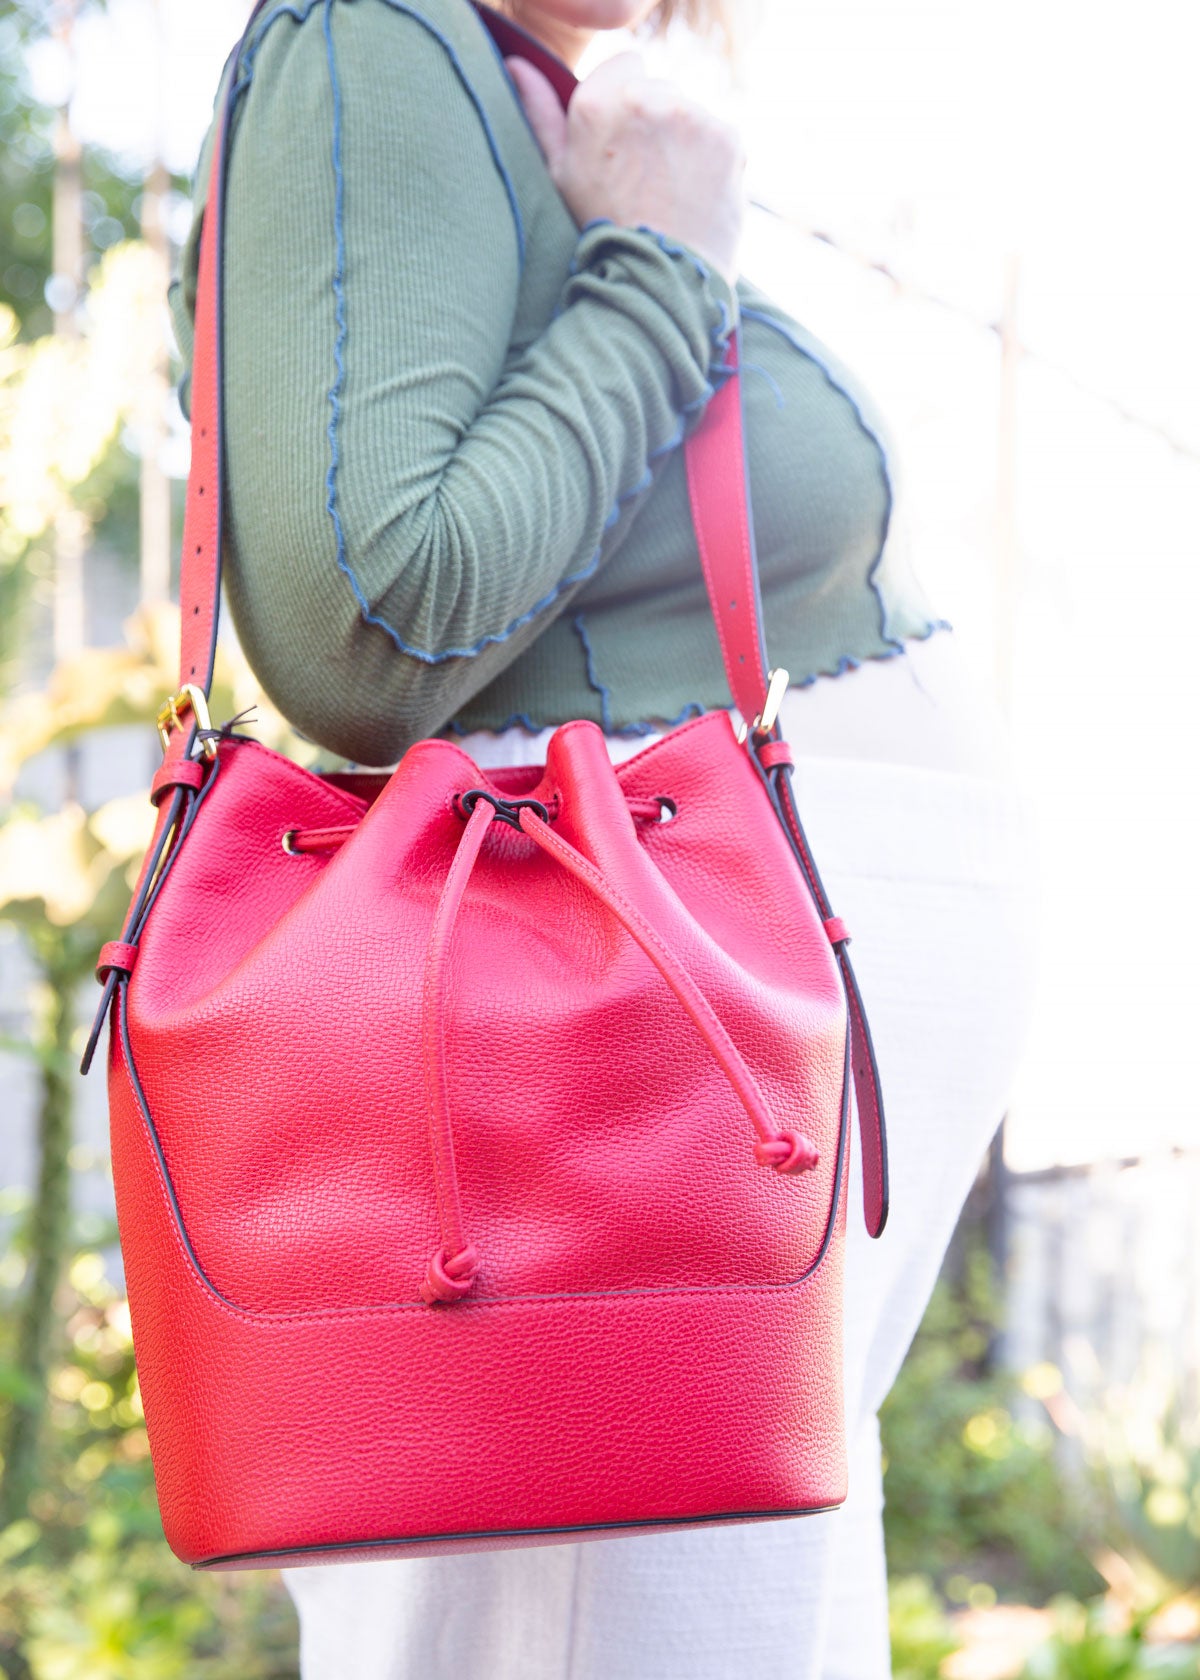 Luxe Cinch Bucket Bag - Red